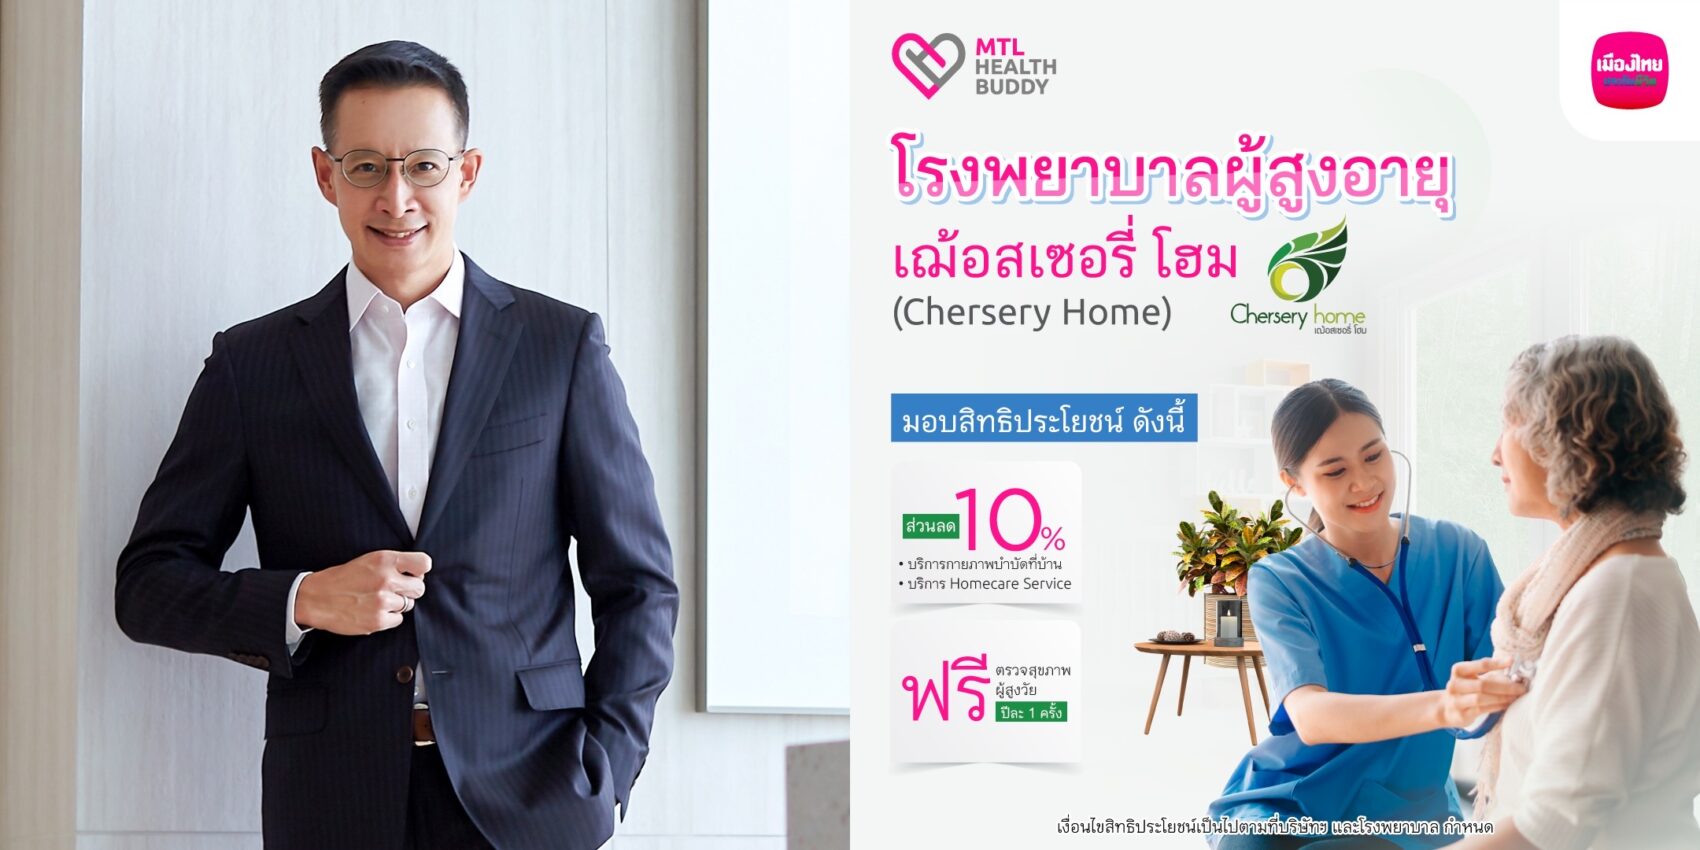 เมืองไทยประกันชีวิต จับมือ โรงพยาบาลผู้สูงอายุเฌ้อสเซอรี่ โฮม  มอบสิทธิประโยชน์สำหรับลูกค้า “MTL Health Buddy”